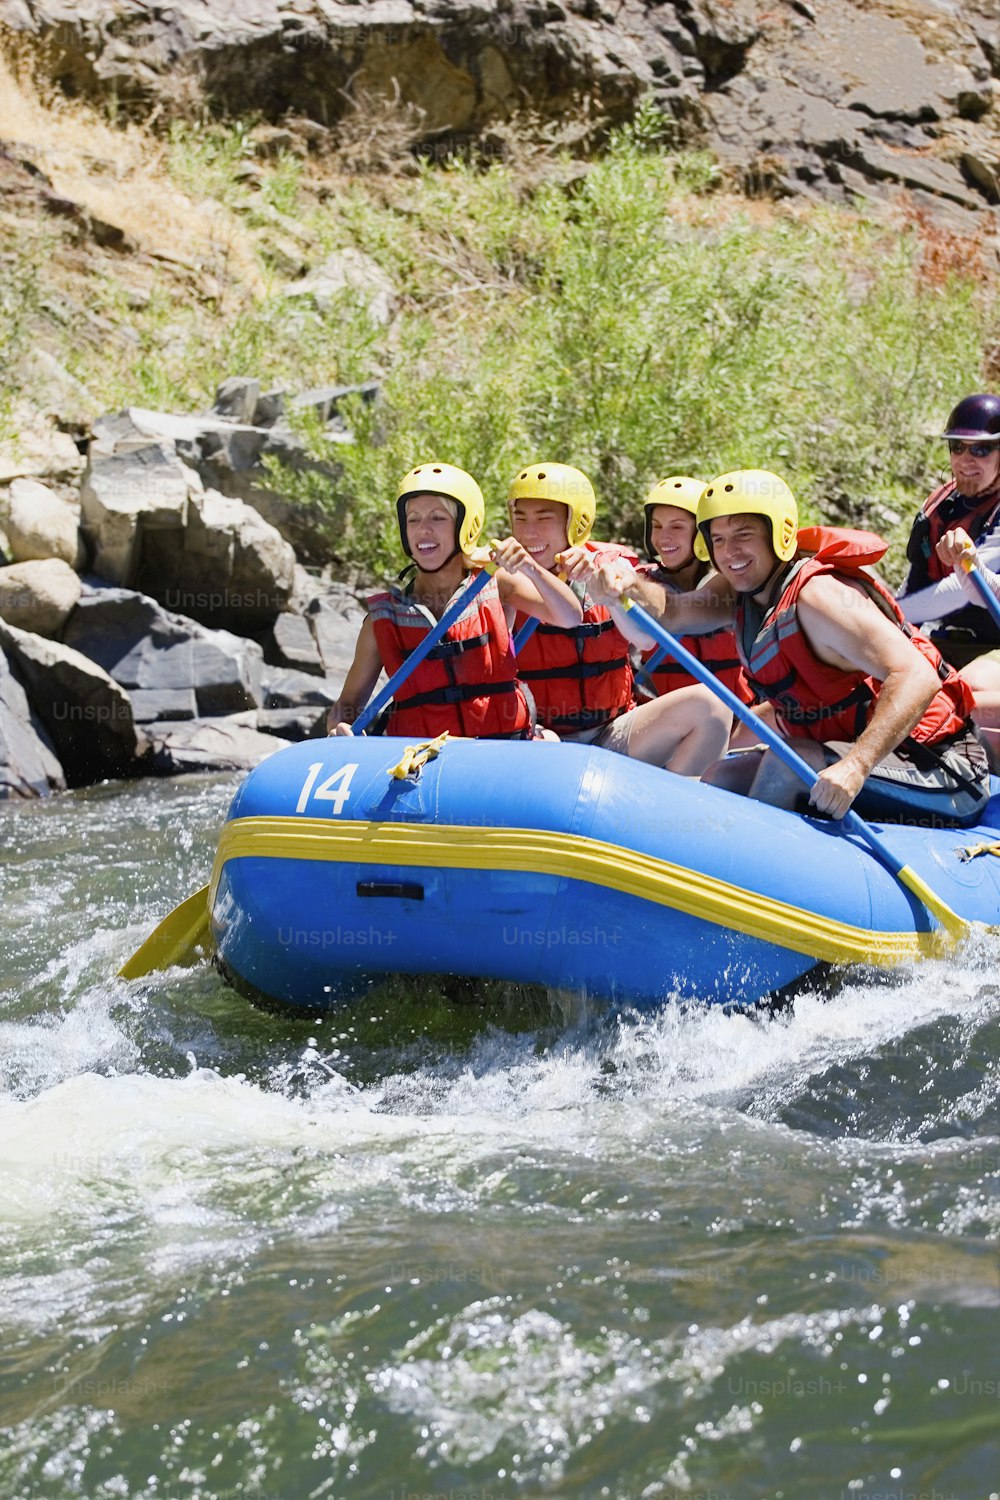 Un grupo de personas montando una balsa río abajo